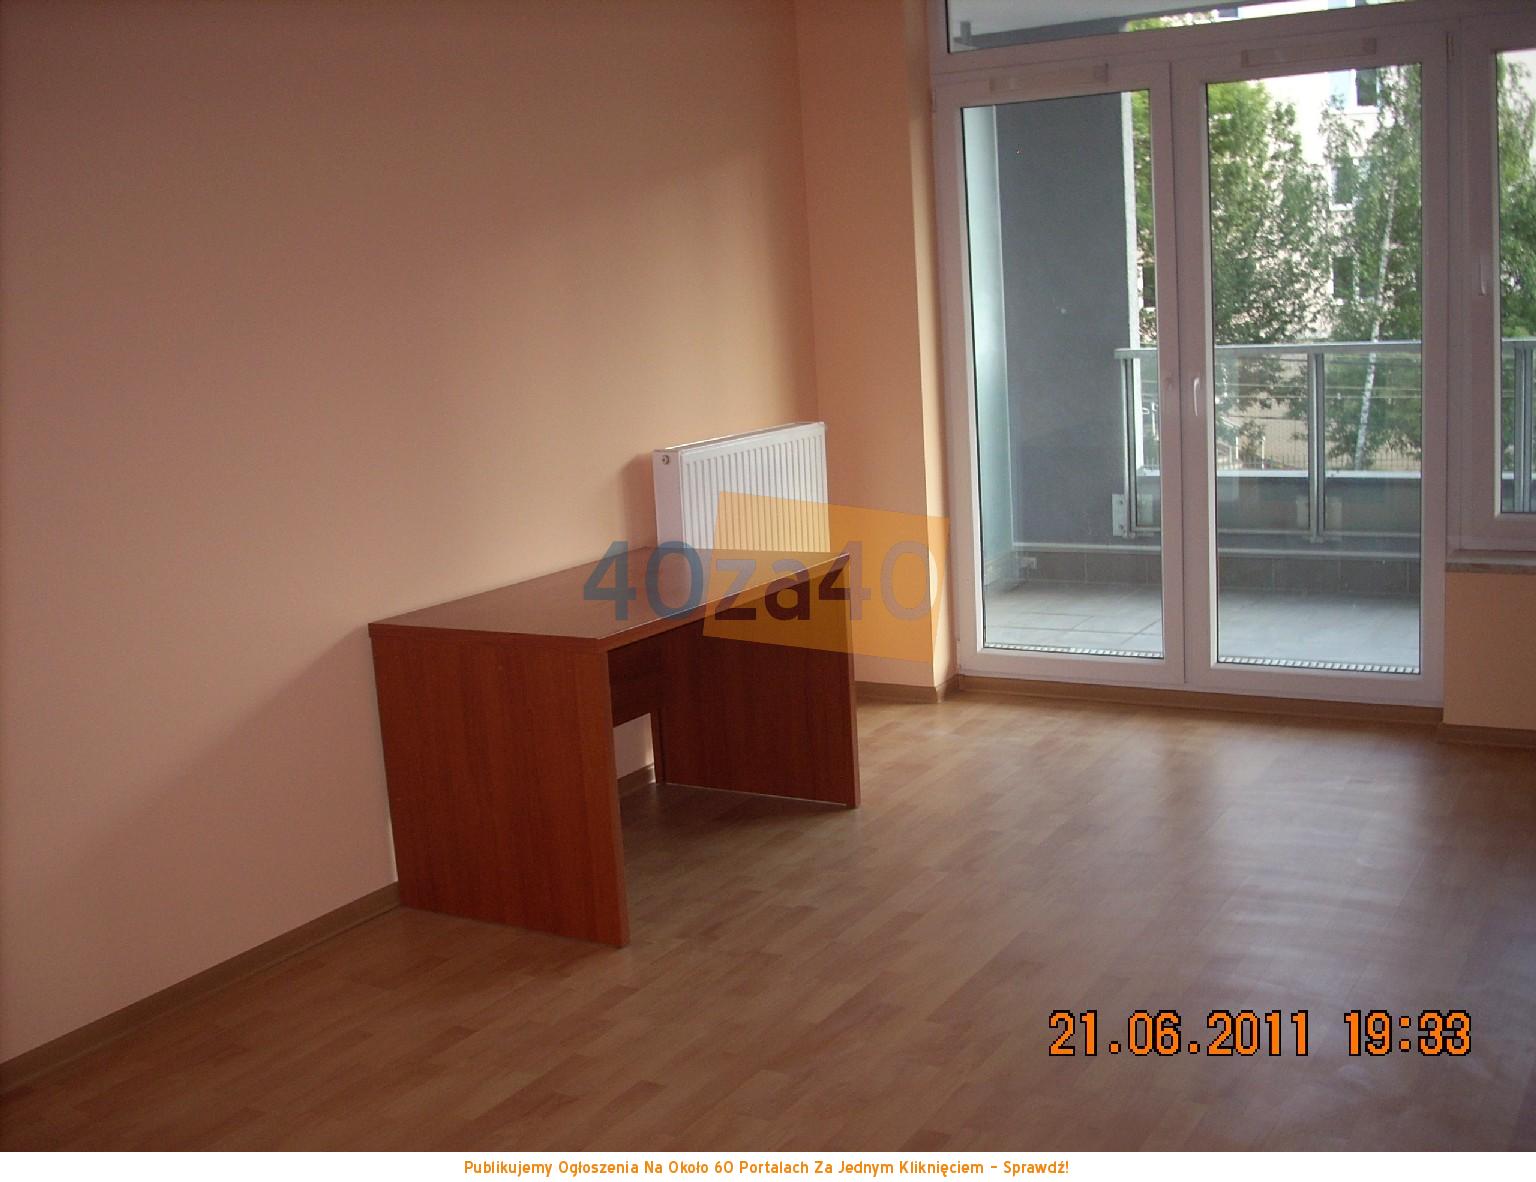 Mieszkanie do wynajęcia, pokoje: 2, cena: 1 600,00 PLN, Warszawa, kontakt: 604507235